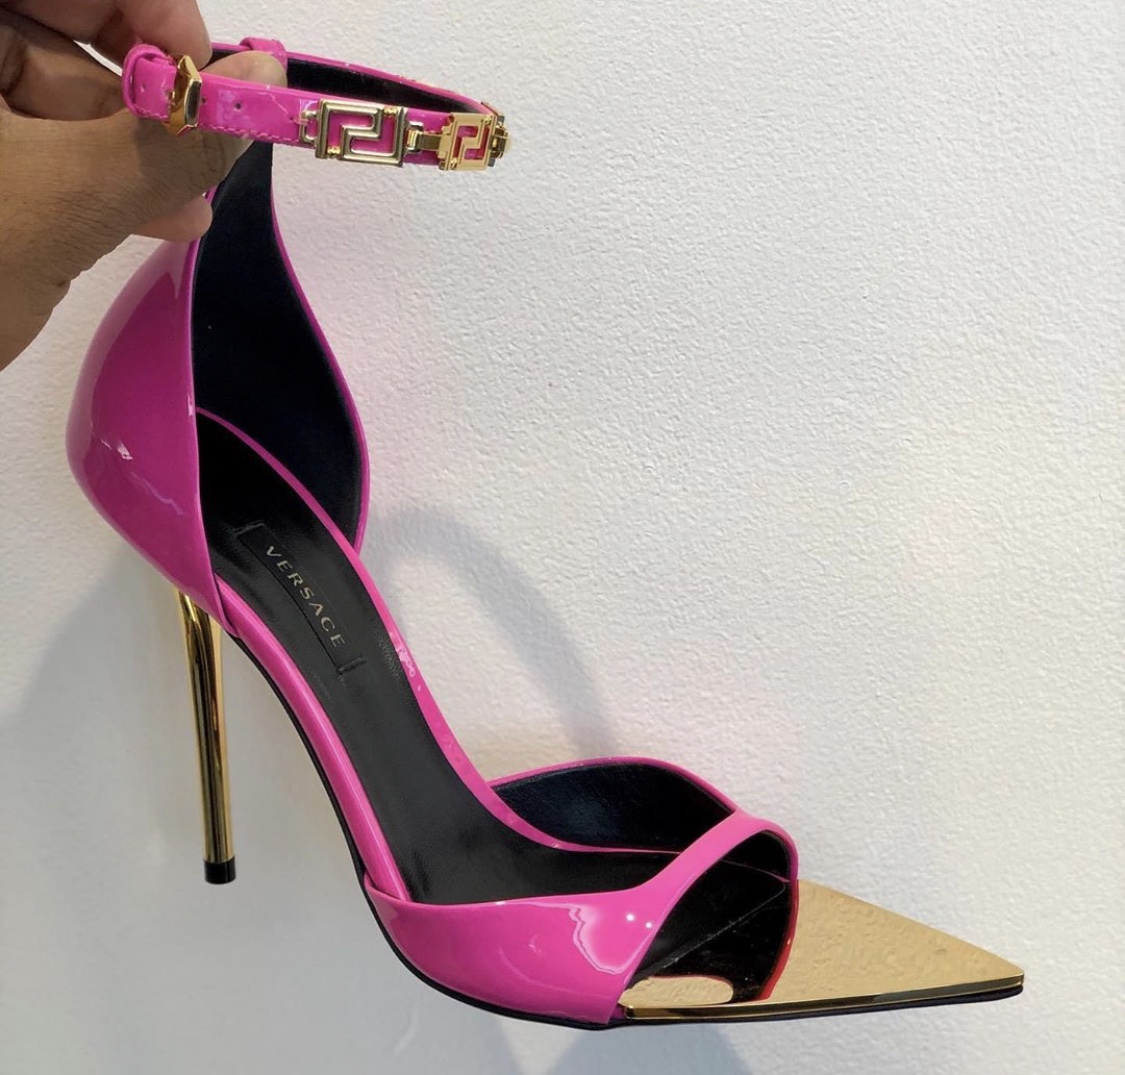 versace sandals 2019